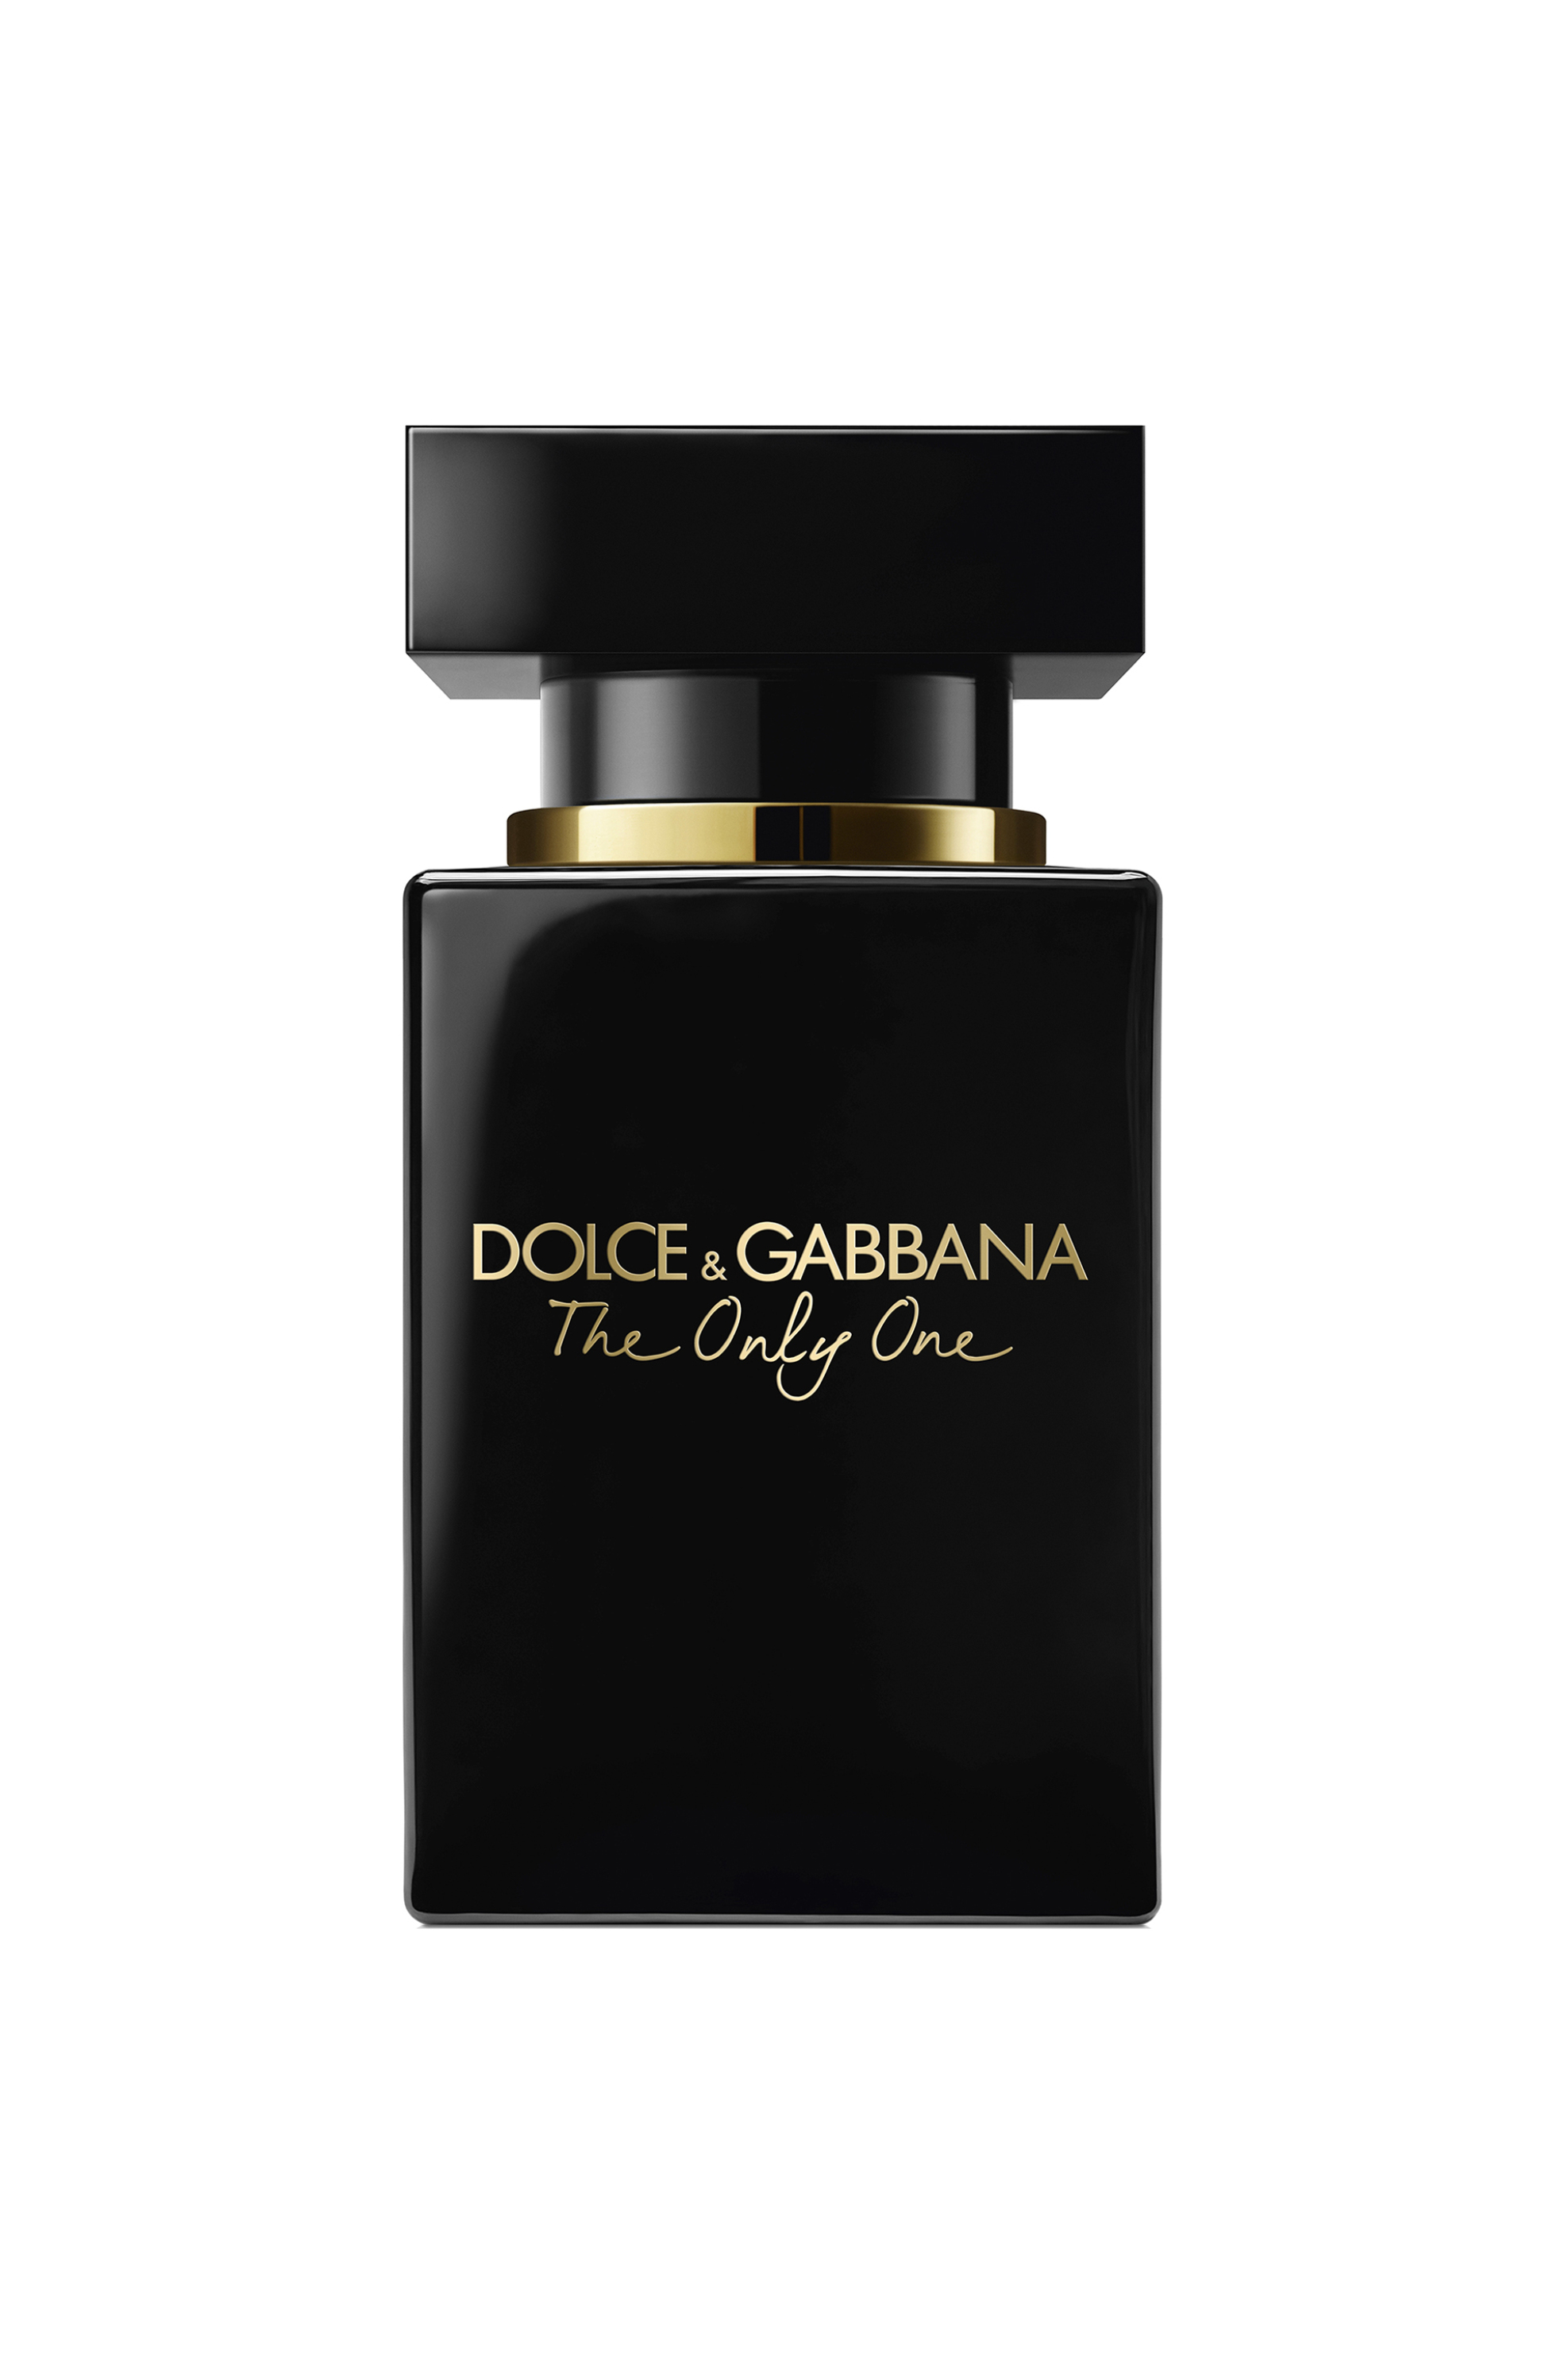 Ομορφιά > ΑΡΩΜΑΤΑ > Γυναικεία Αρώματα > Eau de Parfum - Parfum Dolce & Gabbana The Only One Eau de Parfum Intense - I89665500000